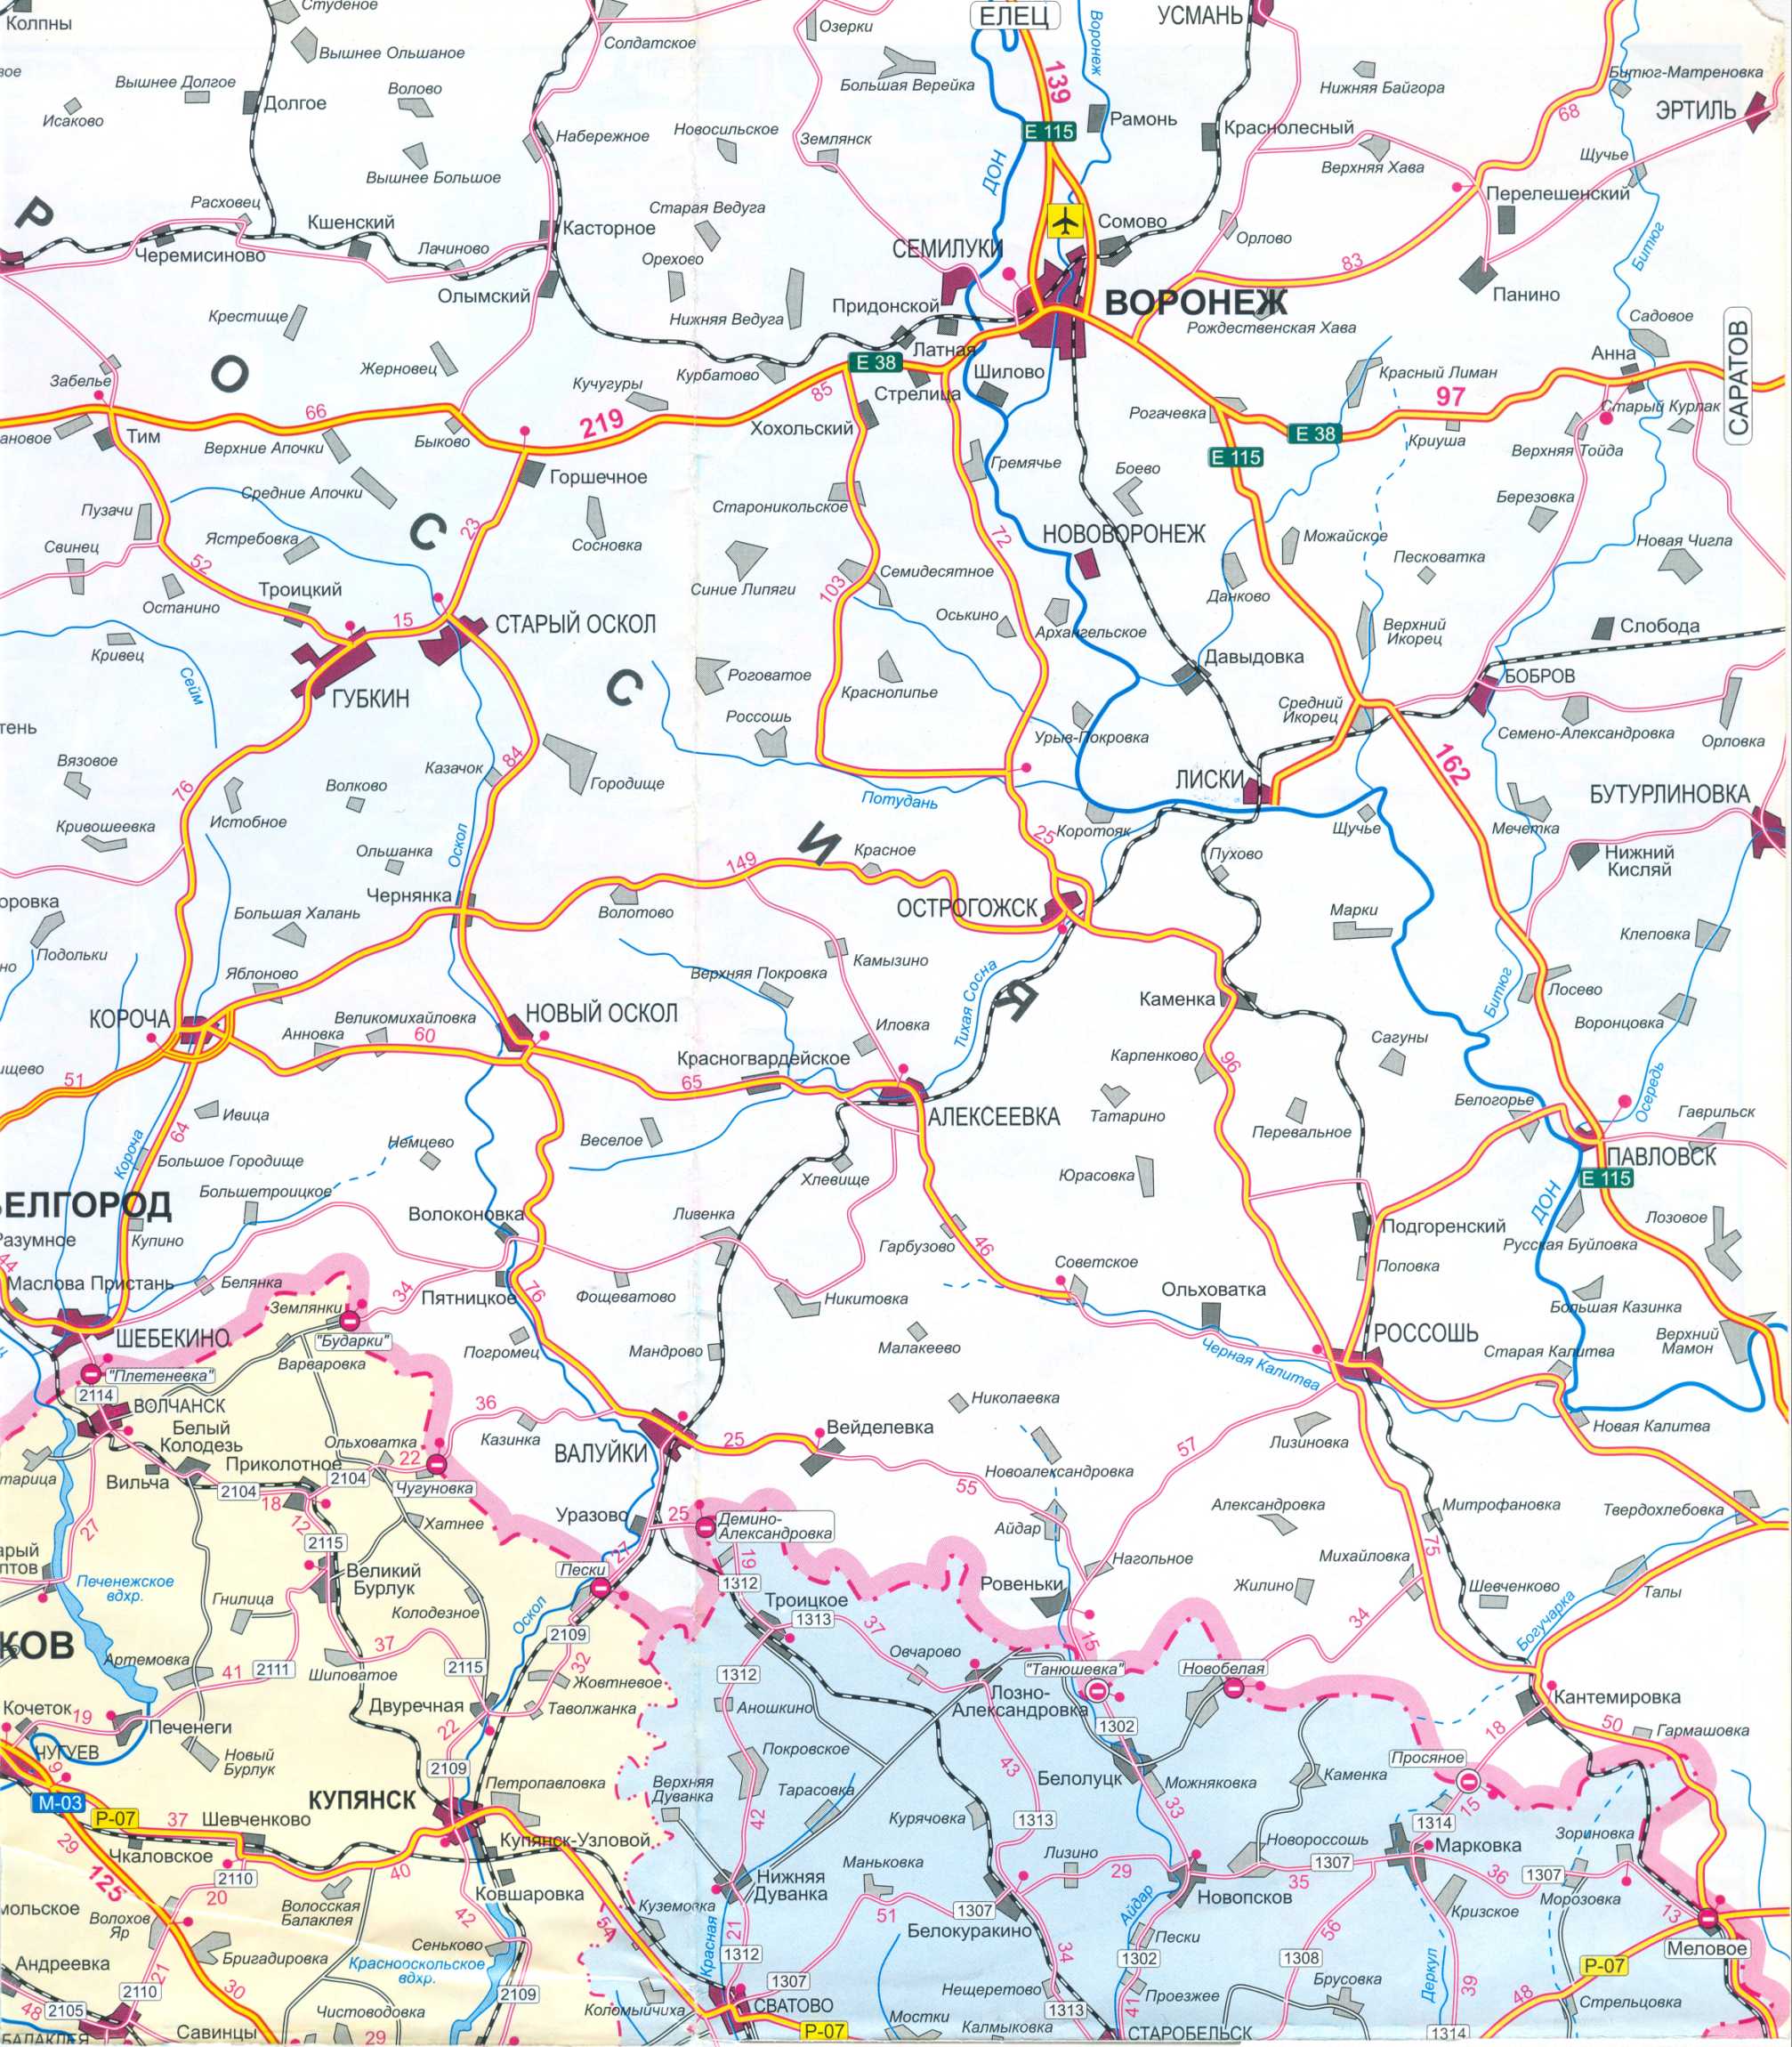 Karte der Ukraine frei. Road Map der Ukraine kostenlos herunterladen. Große Karte von Ukraine Straßen frei, E0